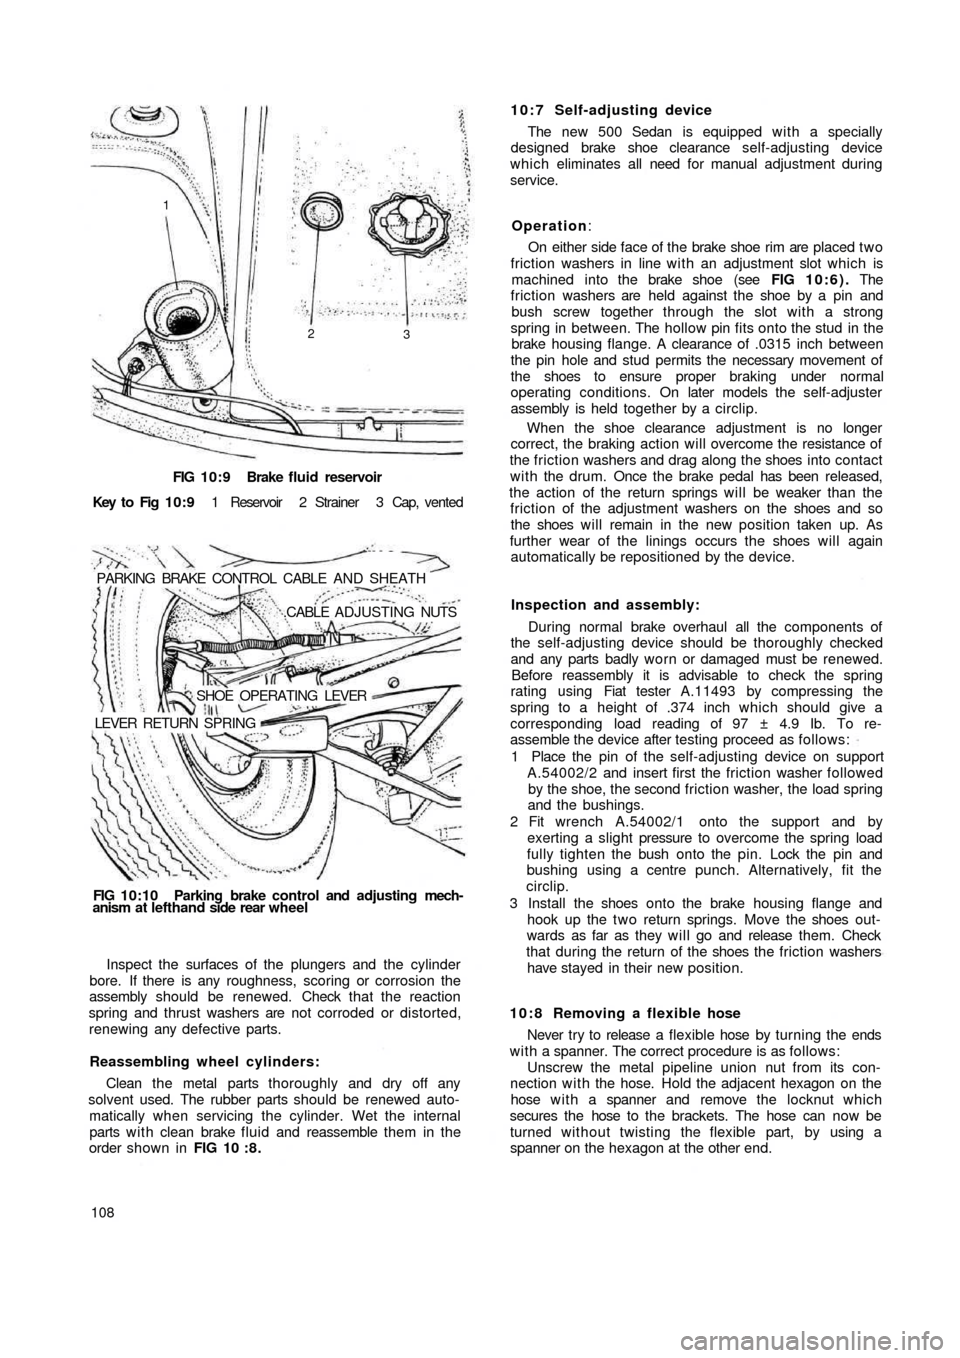 FIAT 500 1957 1.G Workshop Manual FIG 10:9 Brake  fluid reservoir
Key  to  Fig  1 0 : 9 1  Reservoir  2  Strainer  3  Cap,  vented
PARKING  BRAKE  CONTROL  CABLE  AND  SHEATH
.CABLE  ADJUSTING NUTS
SHOE  OPERATING  LEVER
LEVER  RETURN